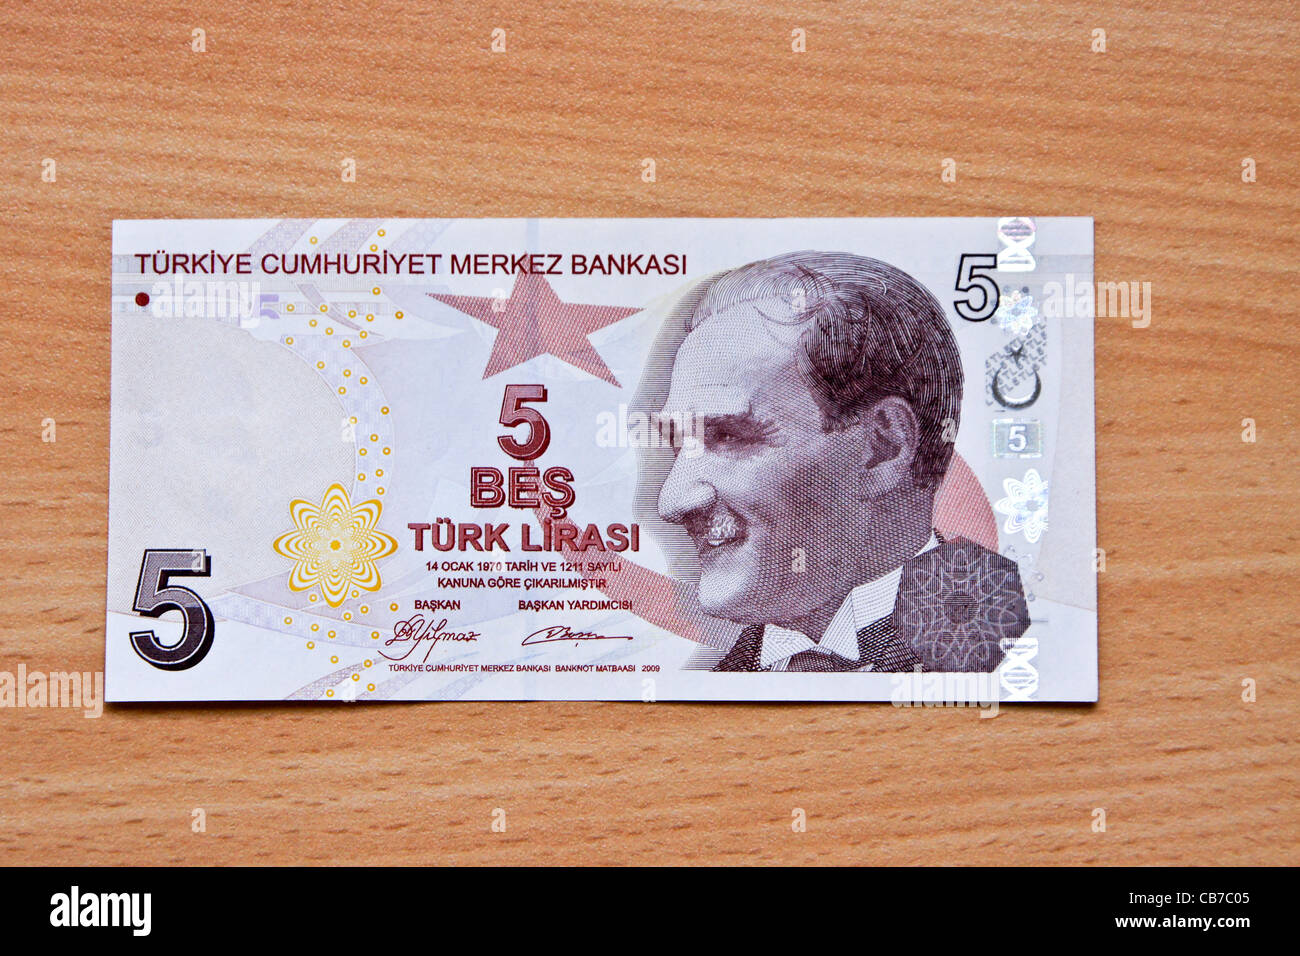 Turkish money (lira) Stock Photo